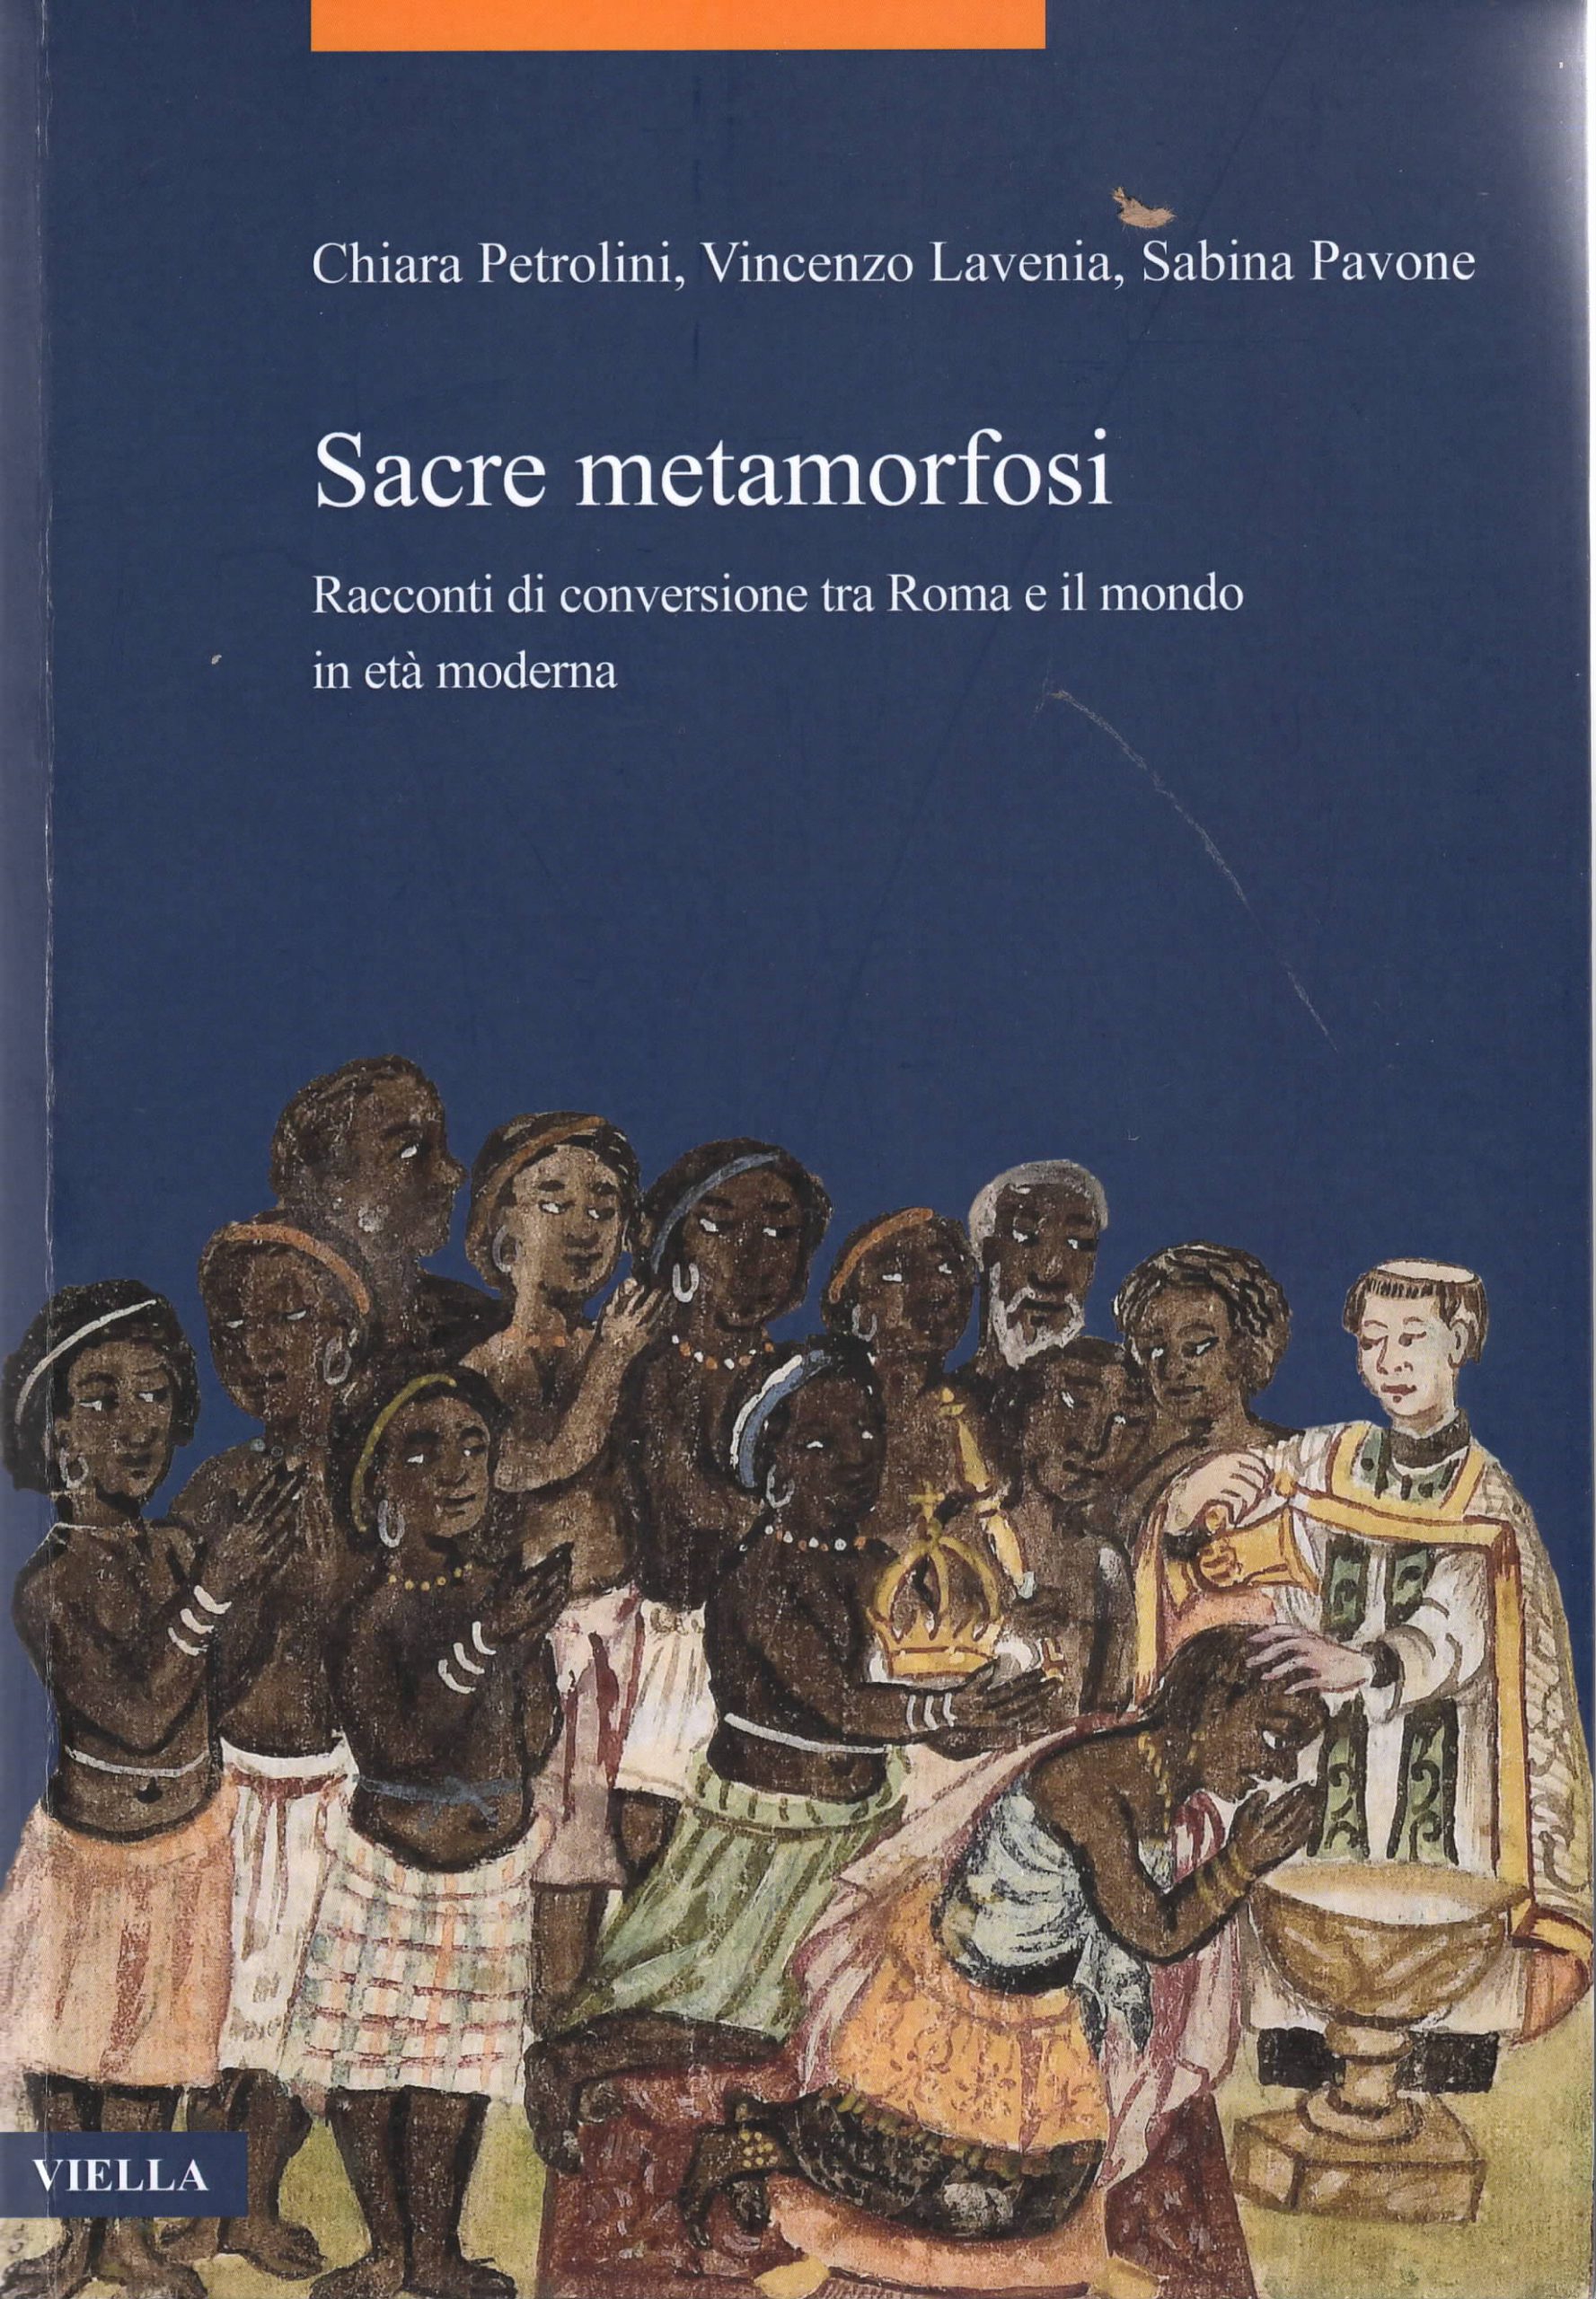 Sacre metamorfosi: Racconti di conversione tra Roma e il mondo in età moderna